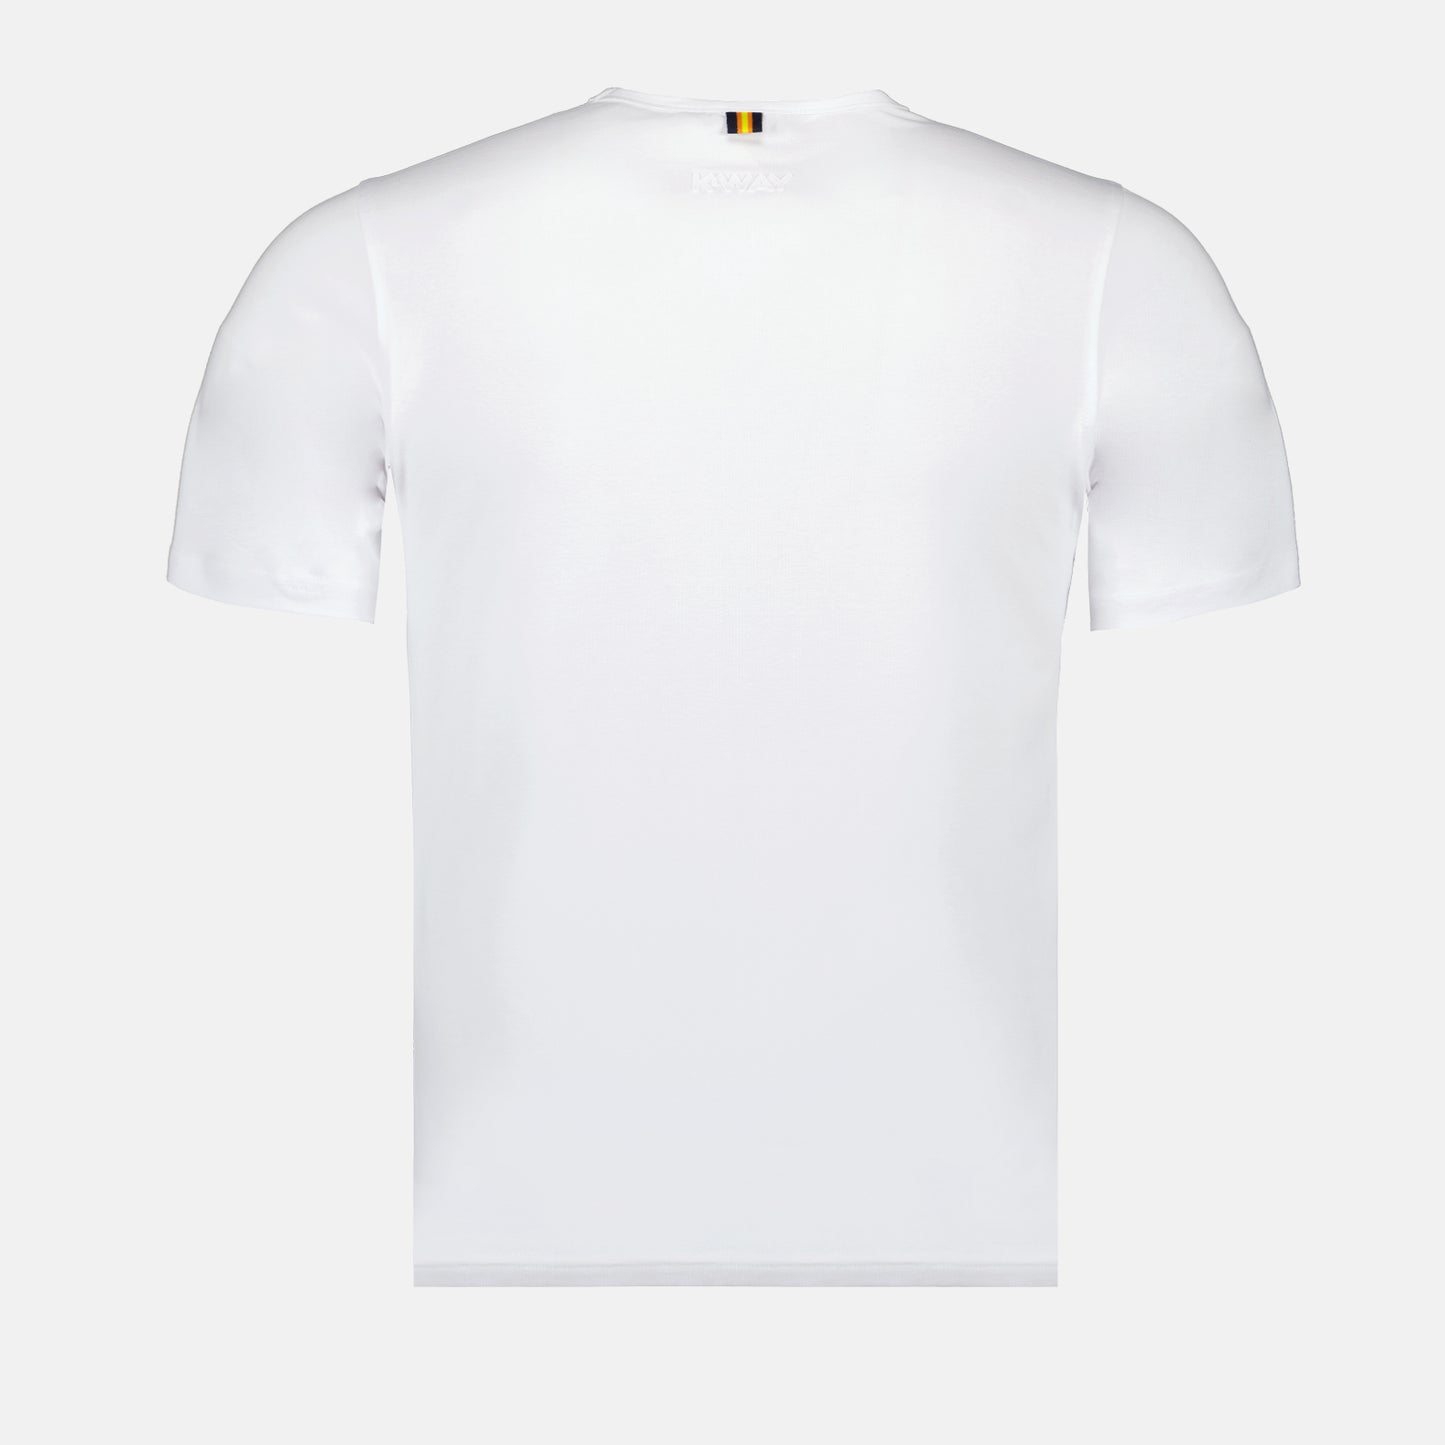 Adame t-shirt